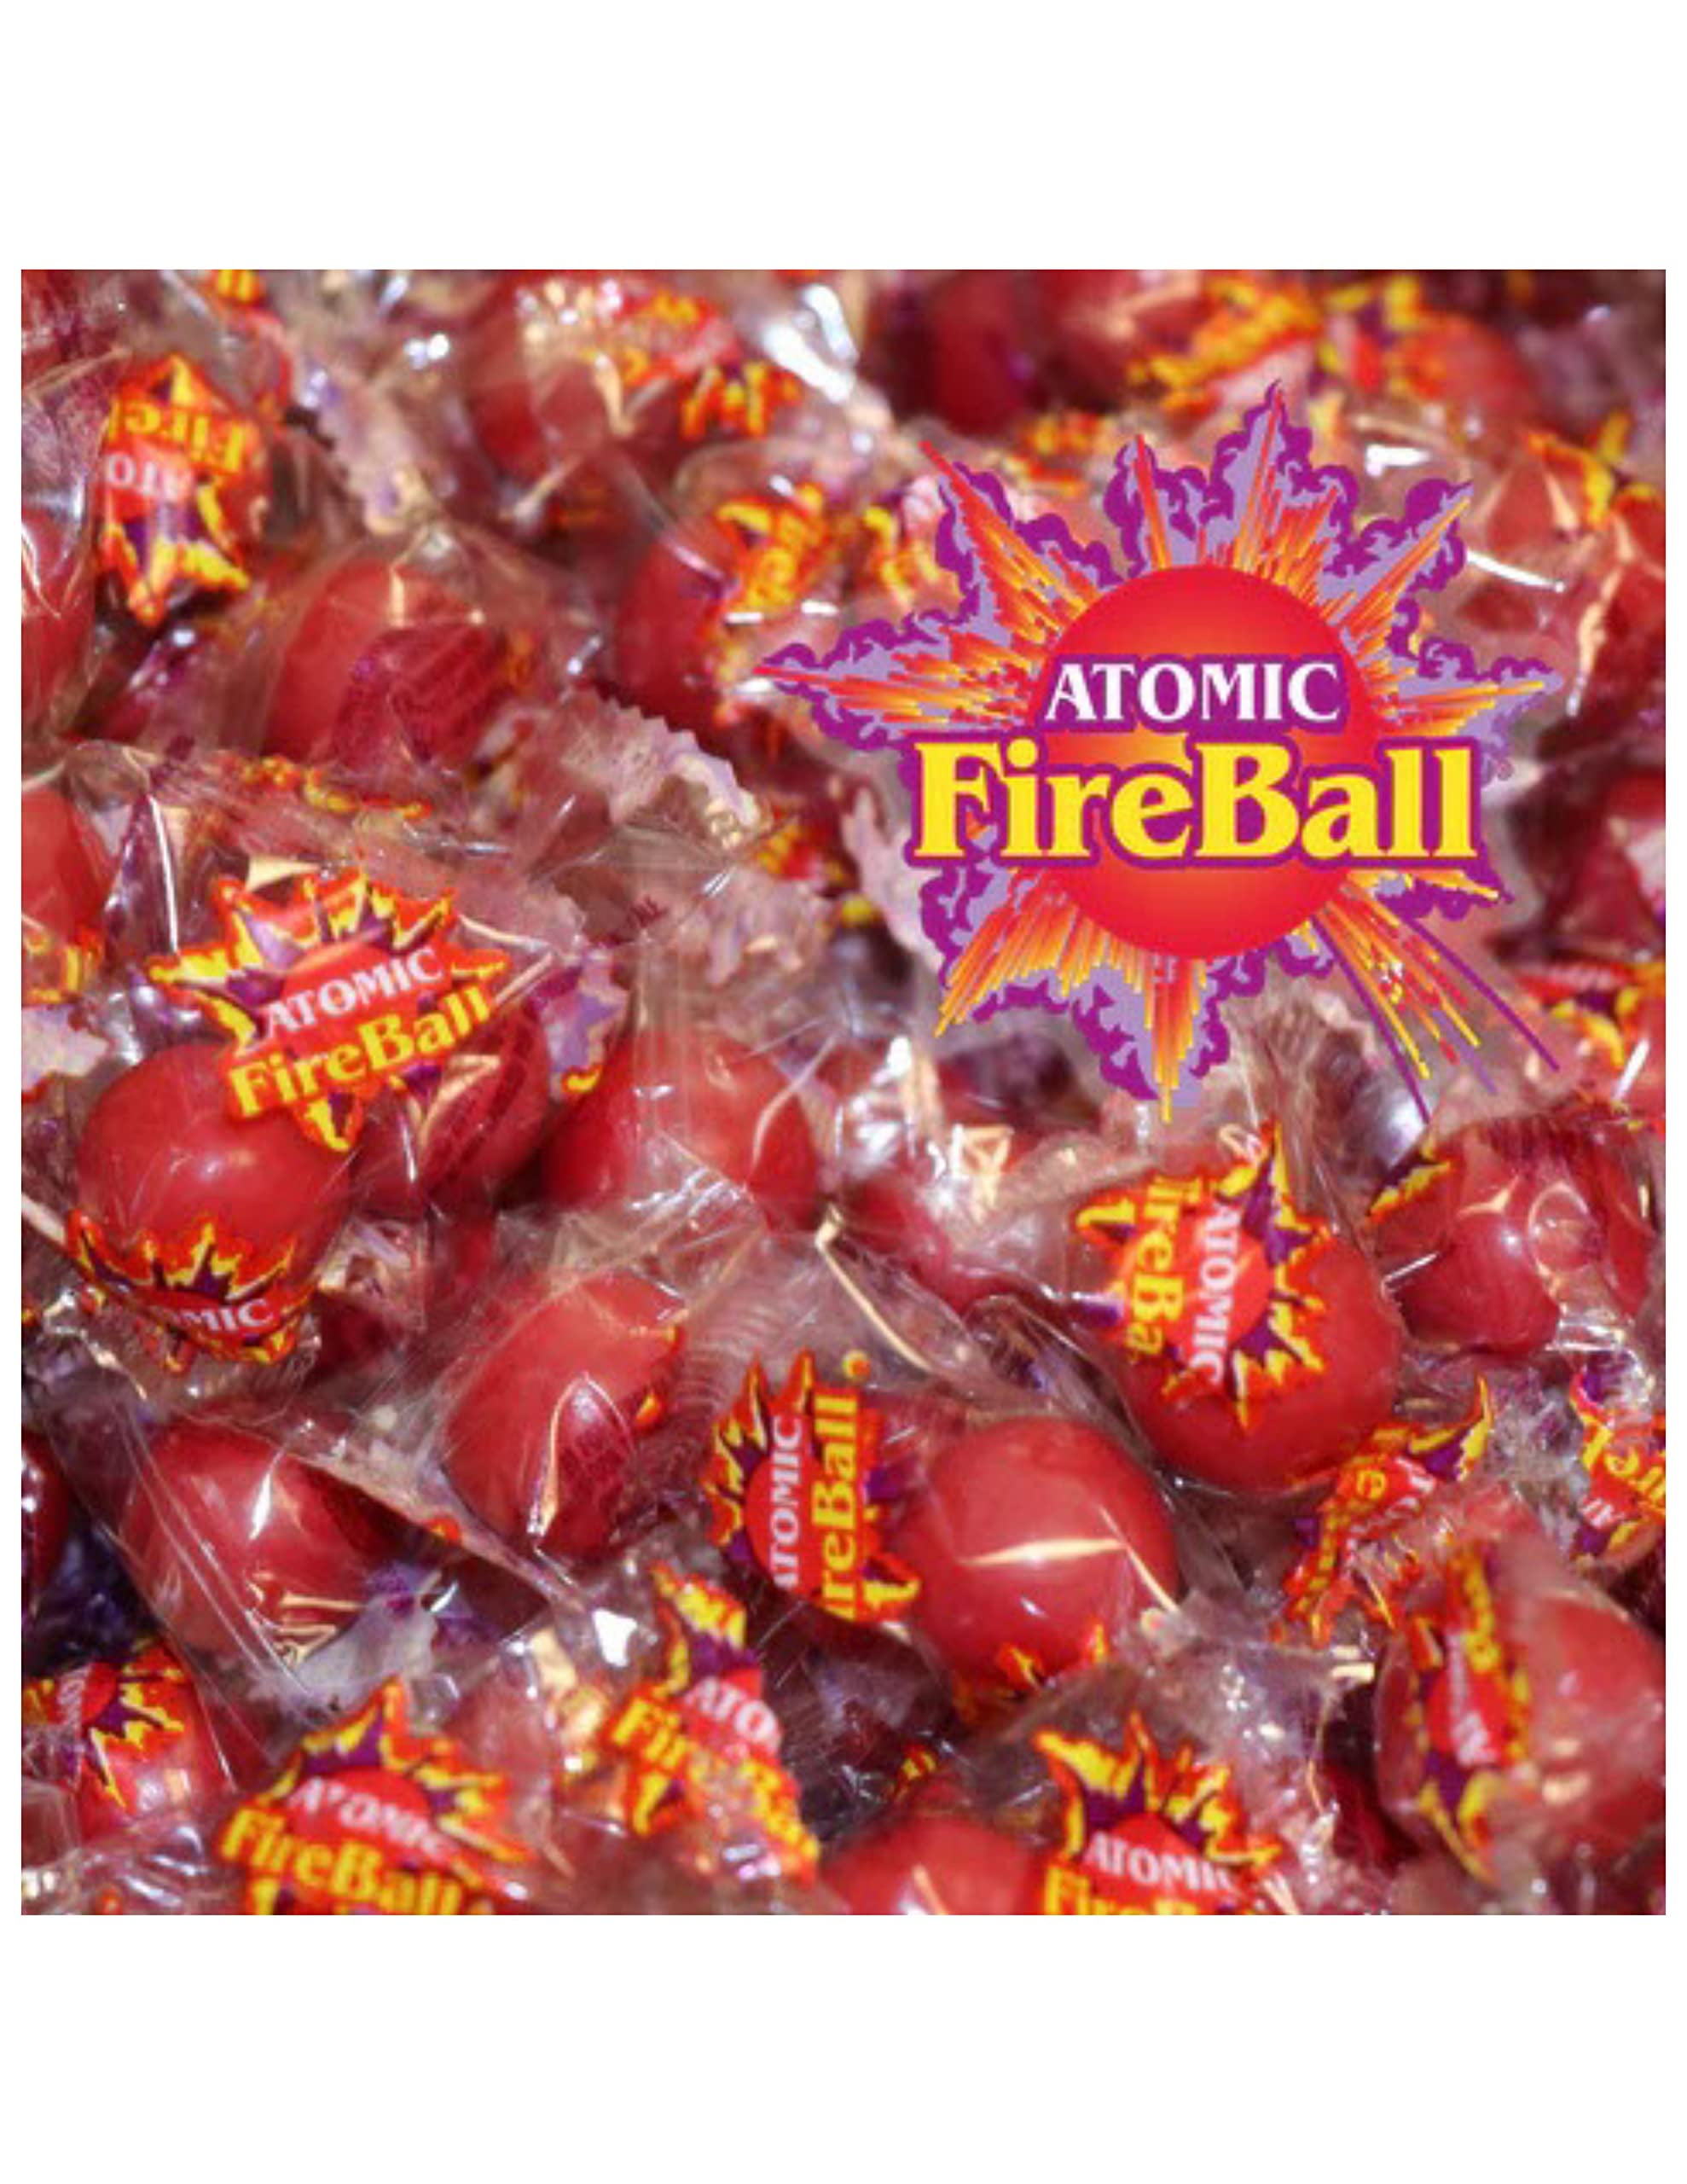 atomic fire ball